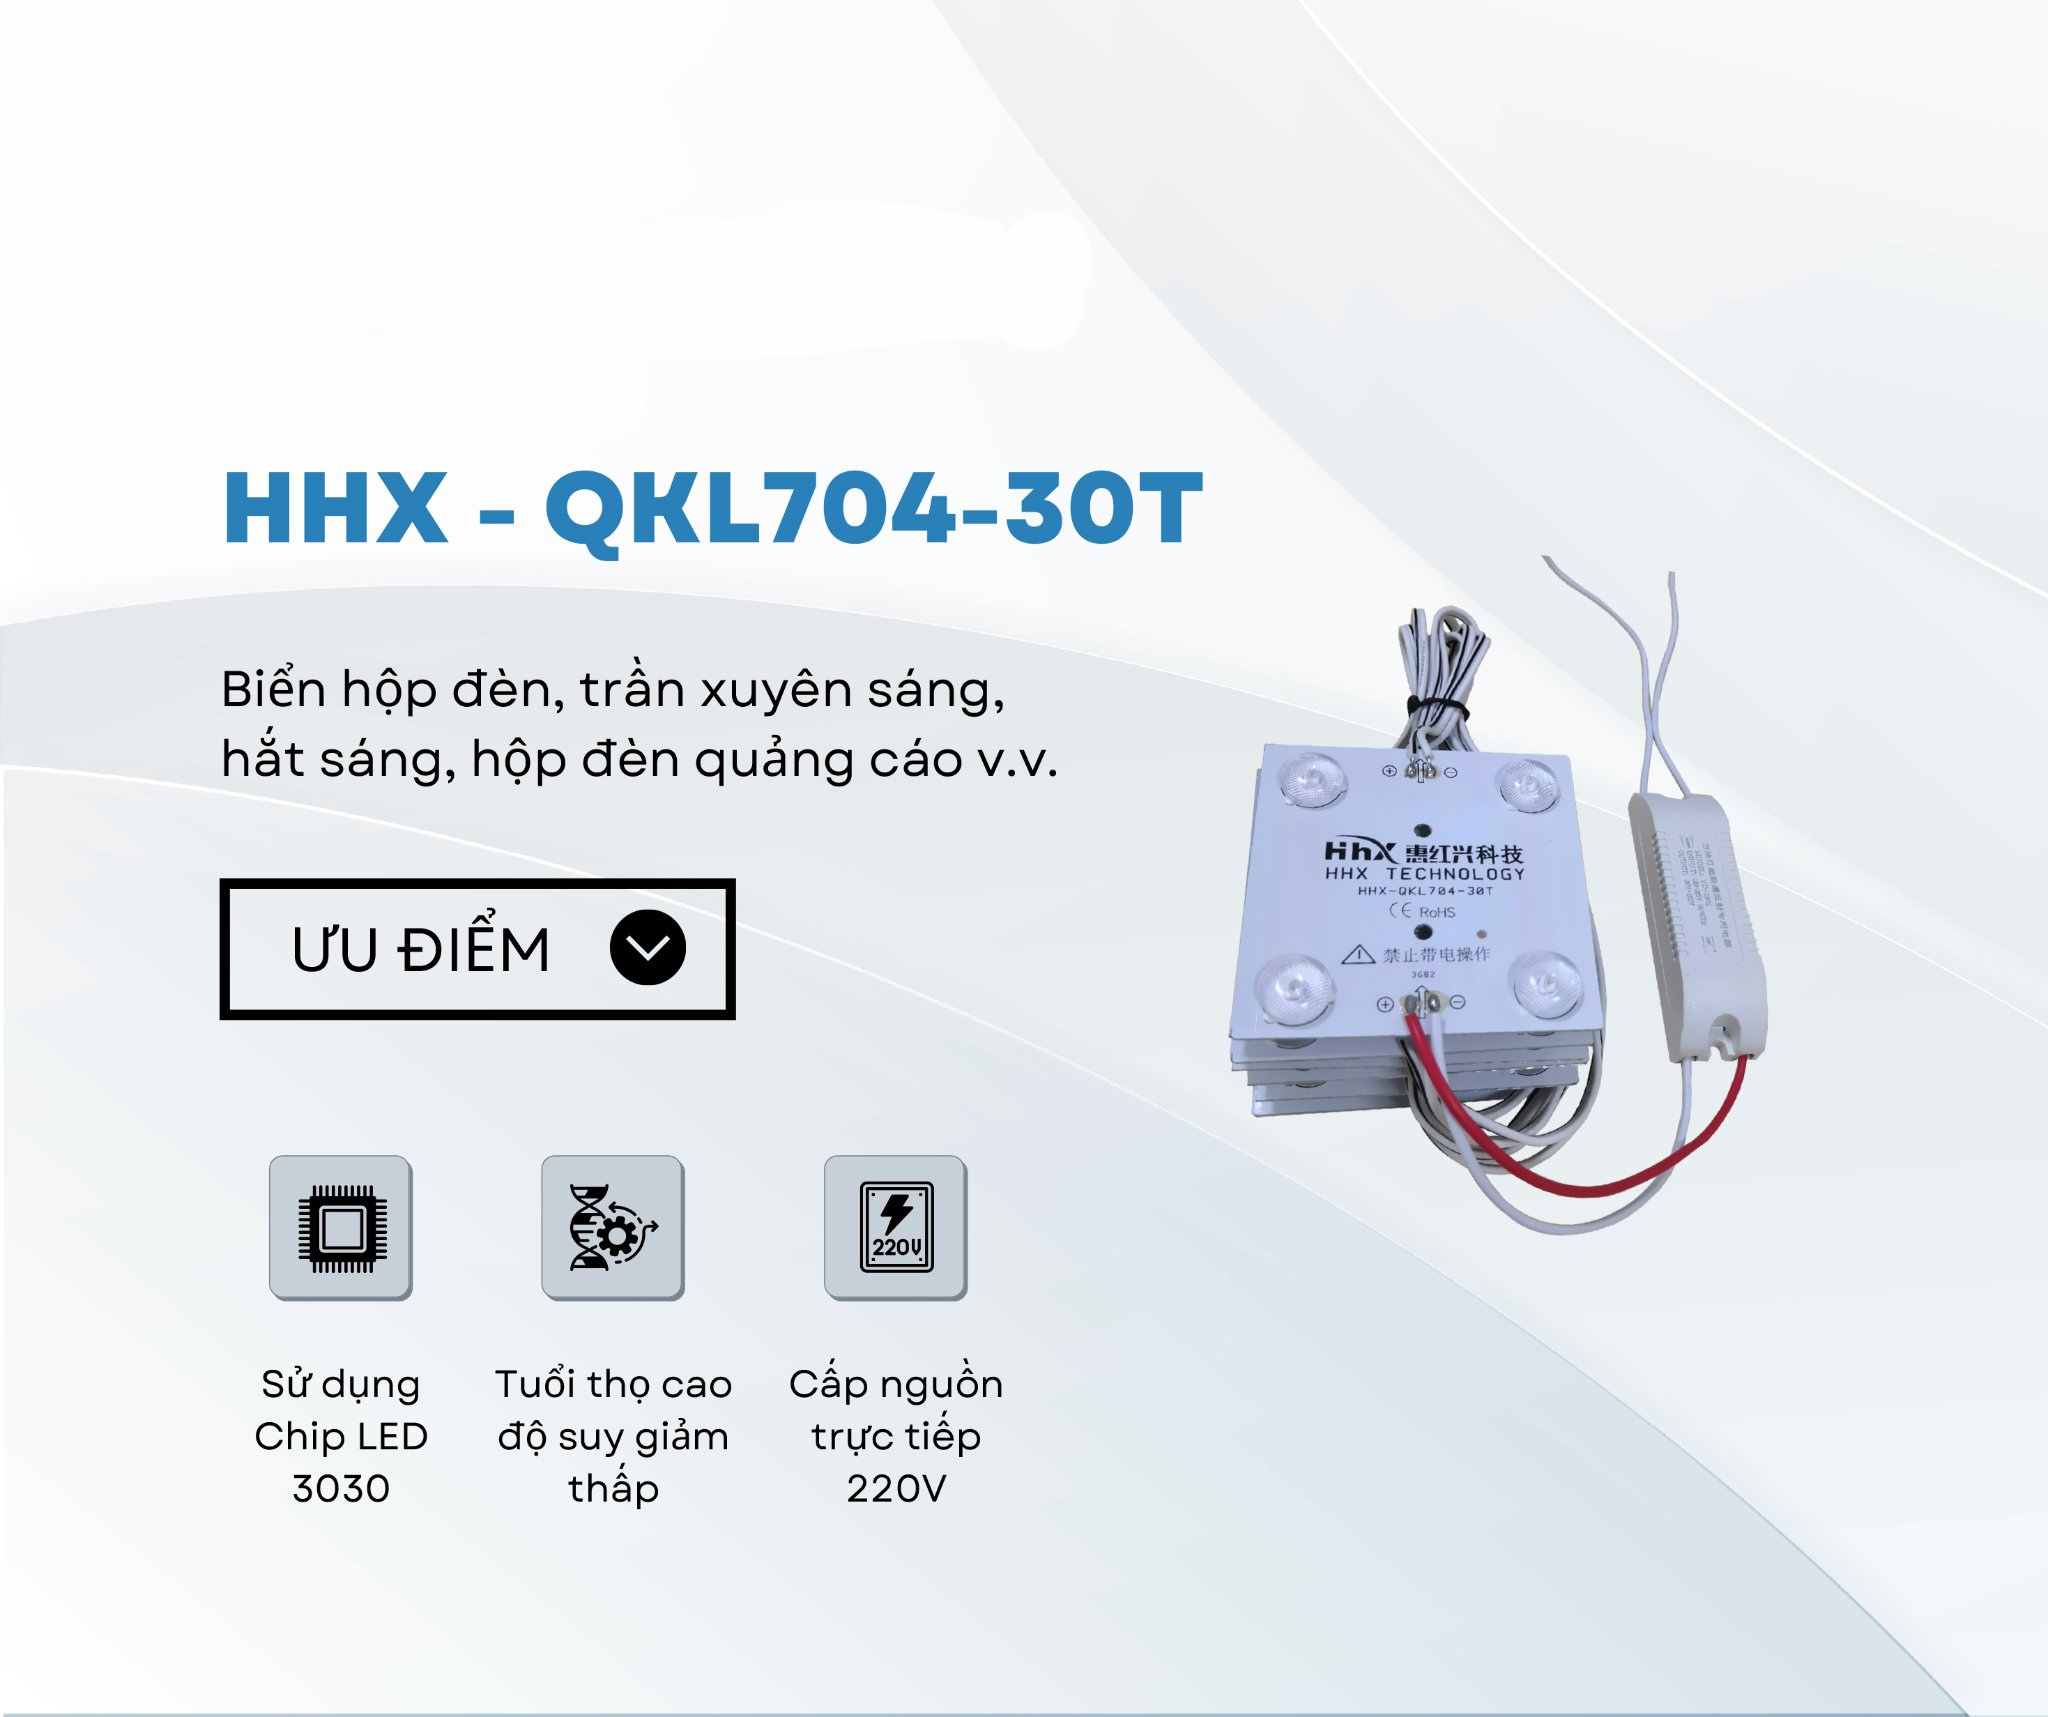 HHX - QKL704-30T